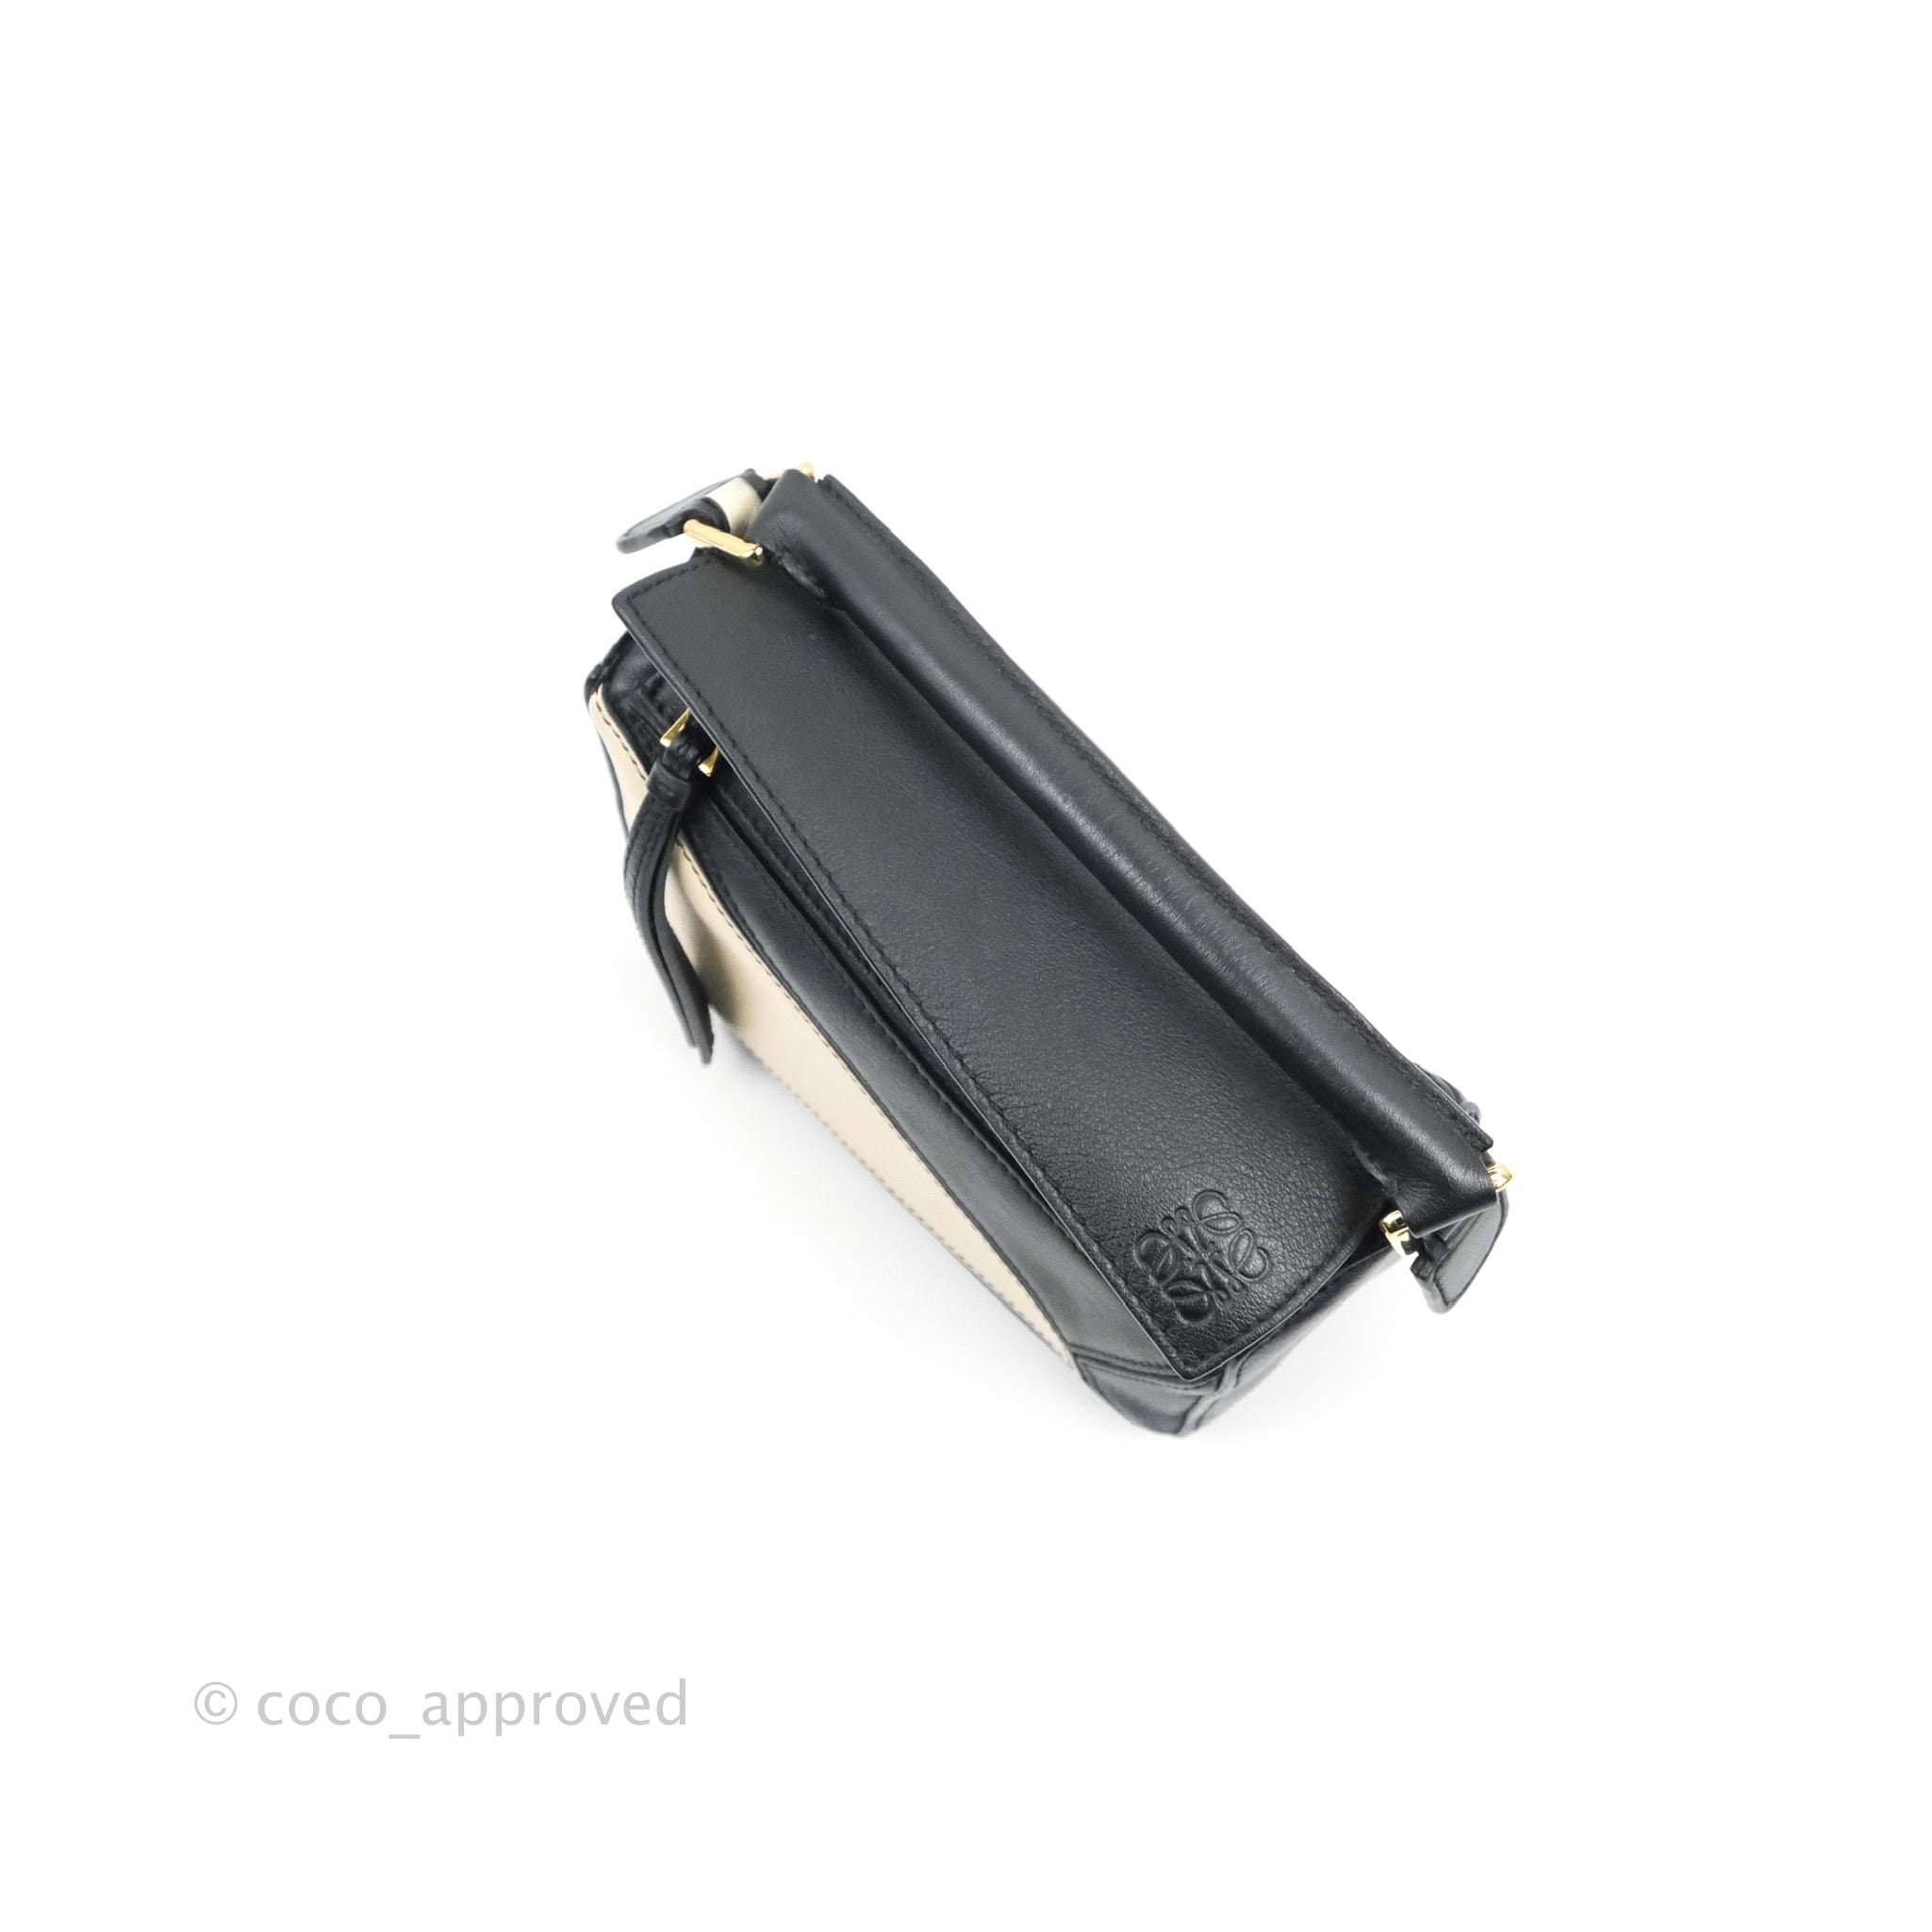 Loewe Mini Puzzle Bag Black/White/Navy Calfskin Gold Hardware